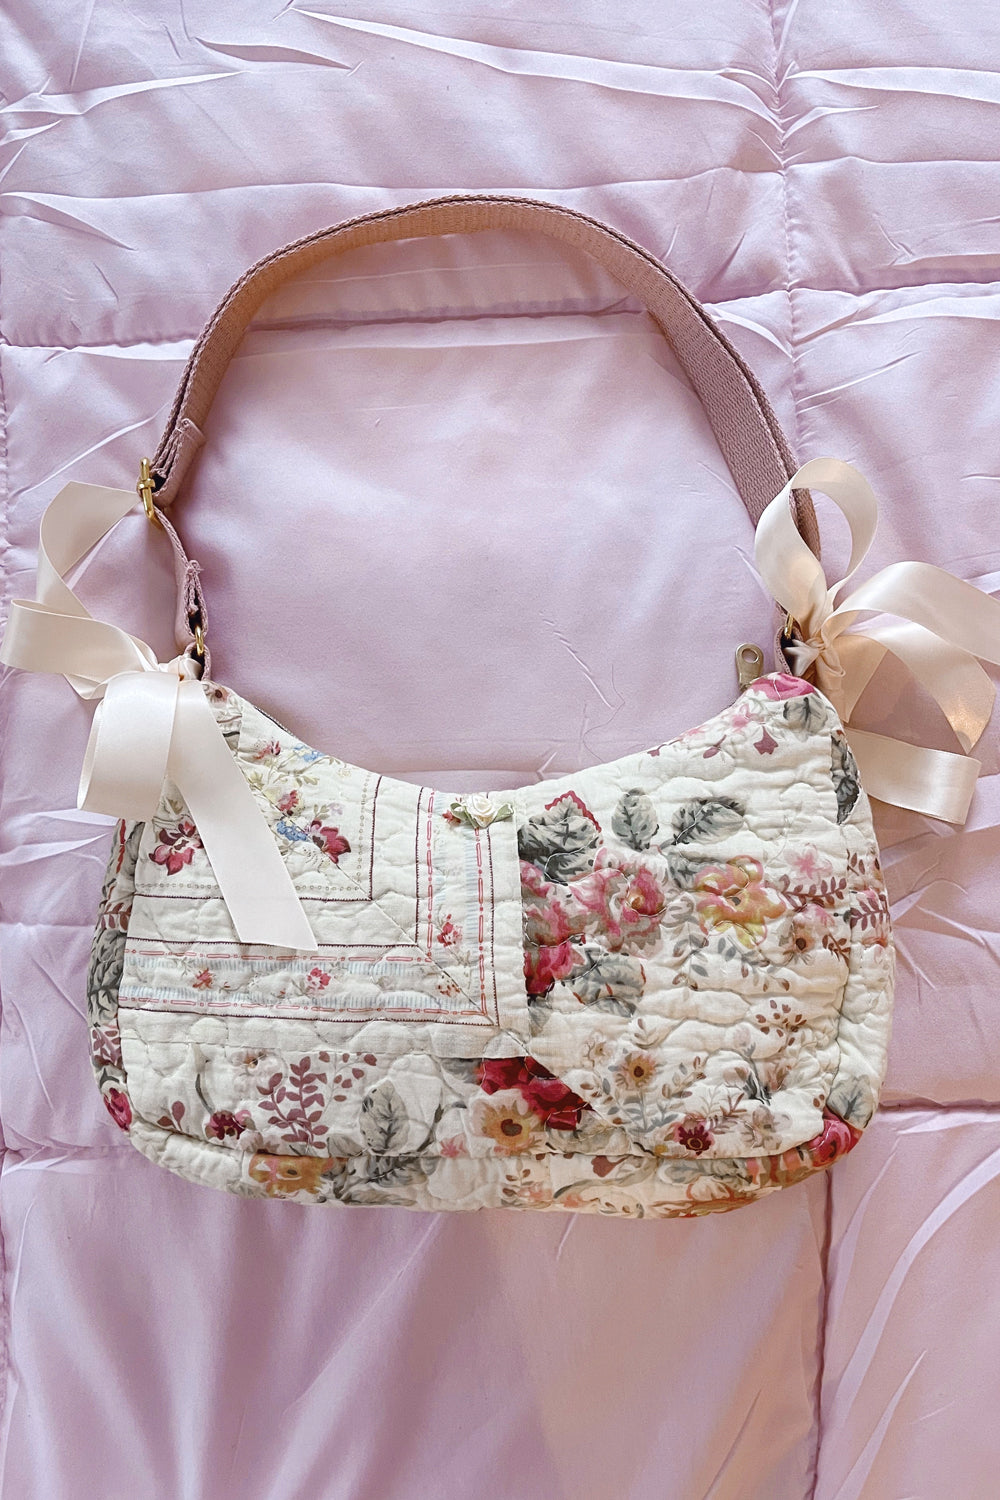 Boho Shabby Chic Bag | Shabby chic bags, Lace bag, Chic purses